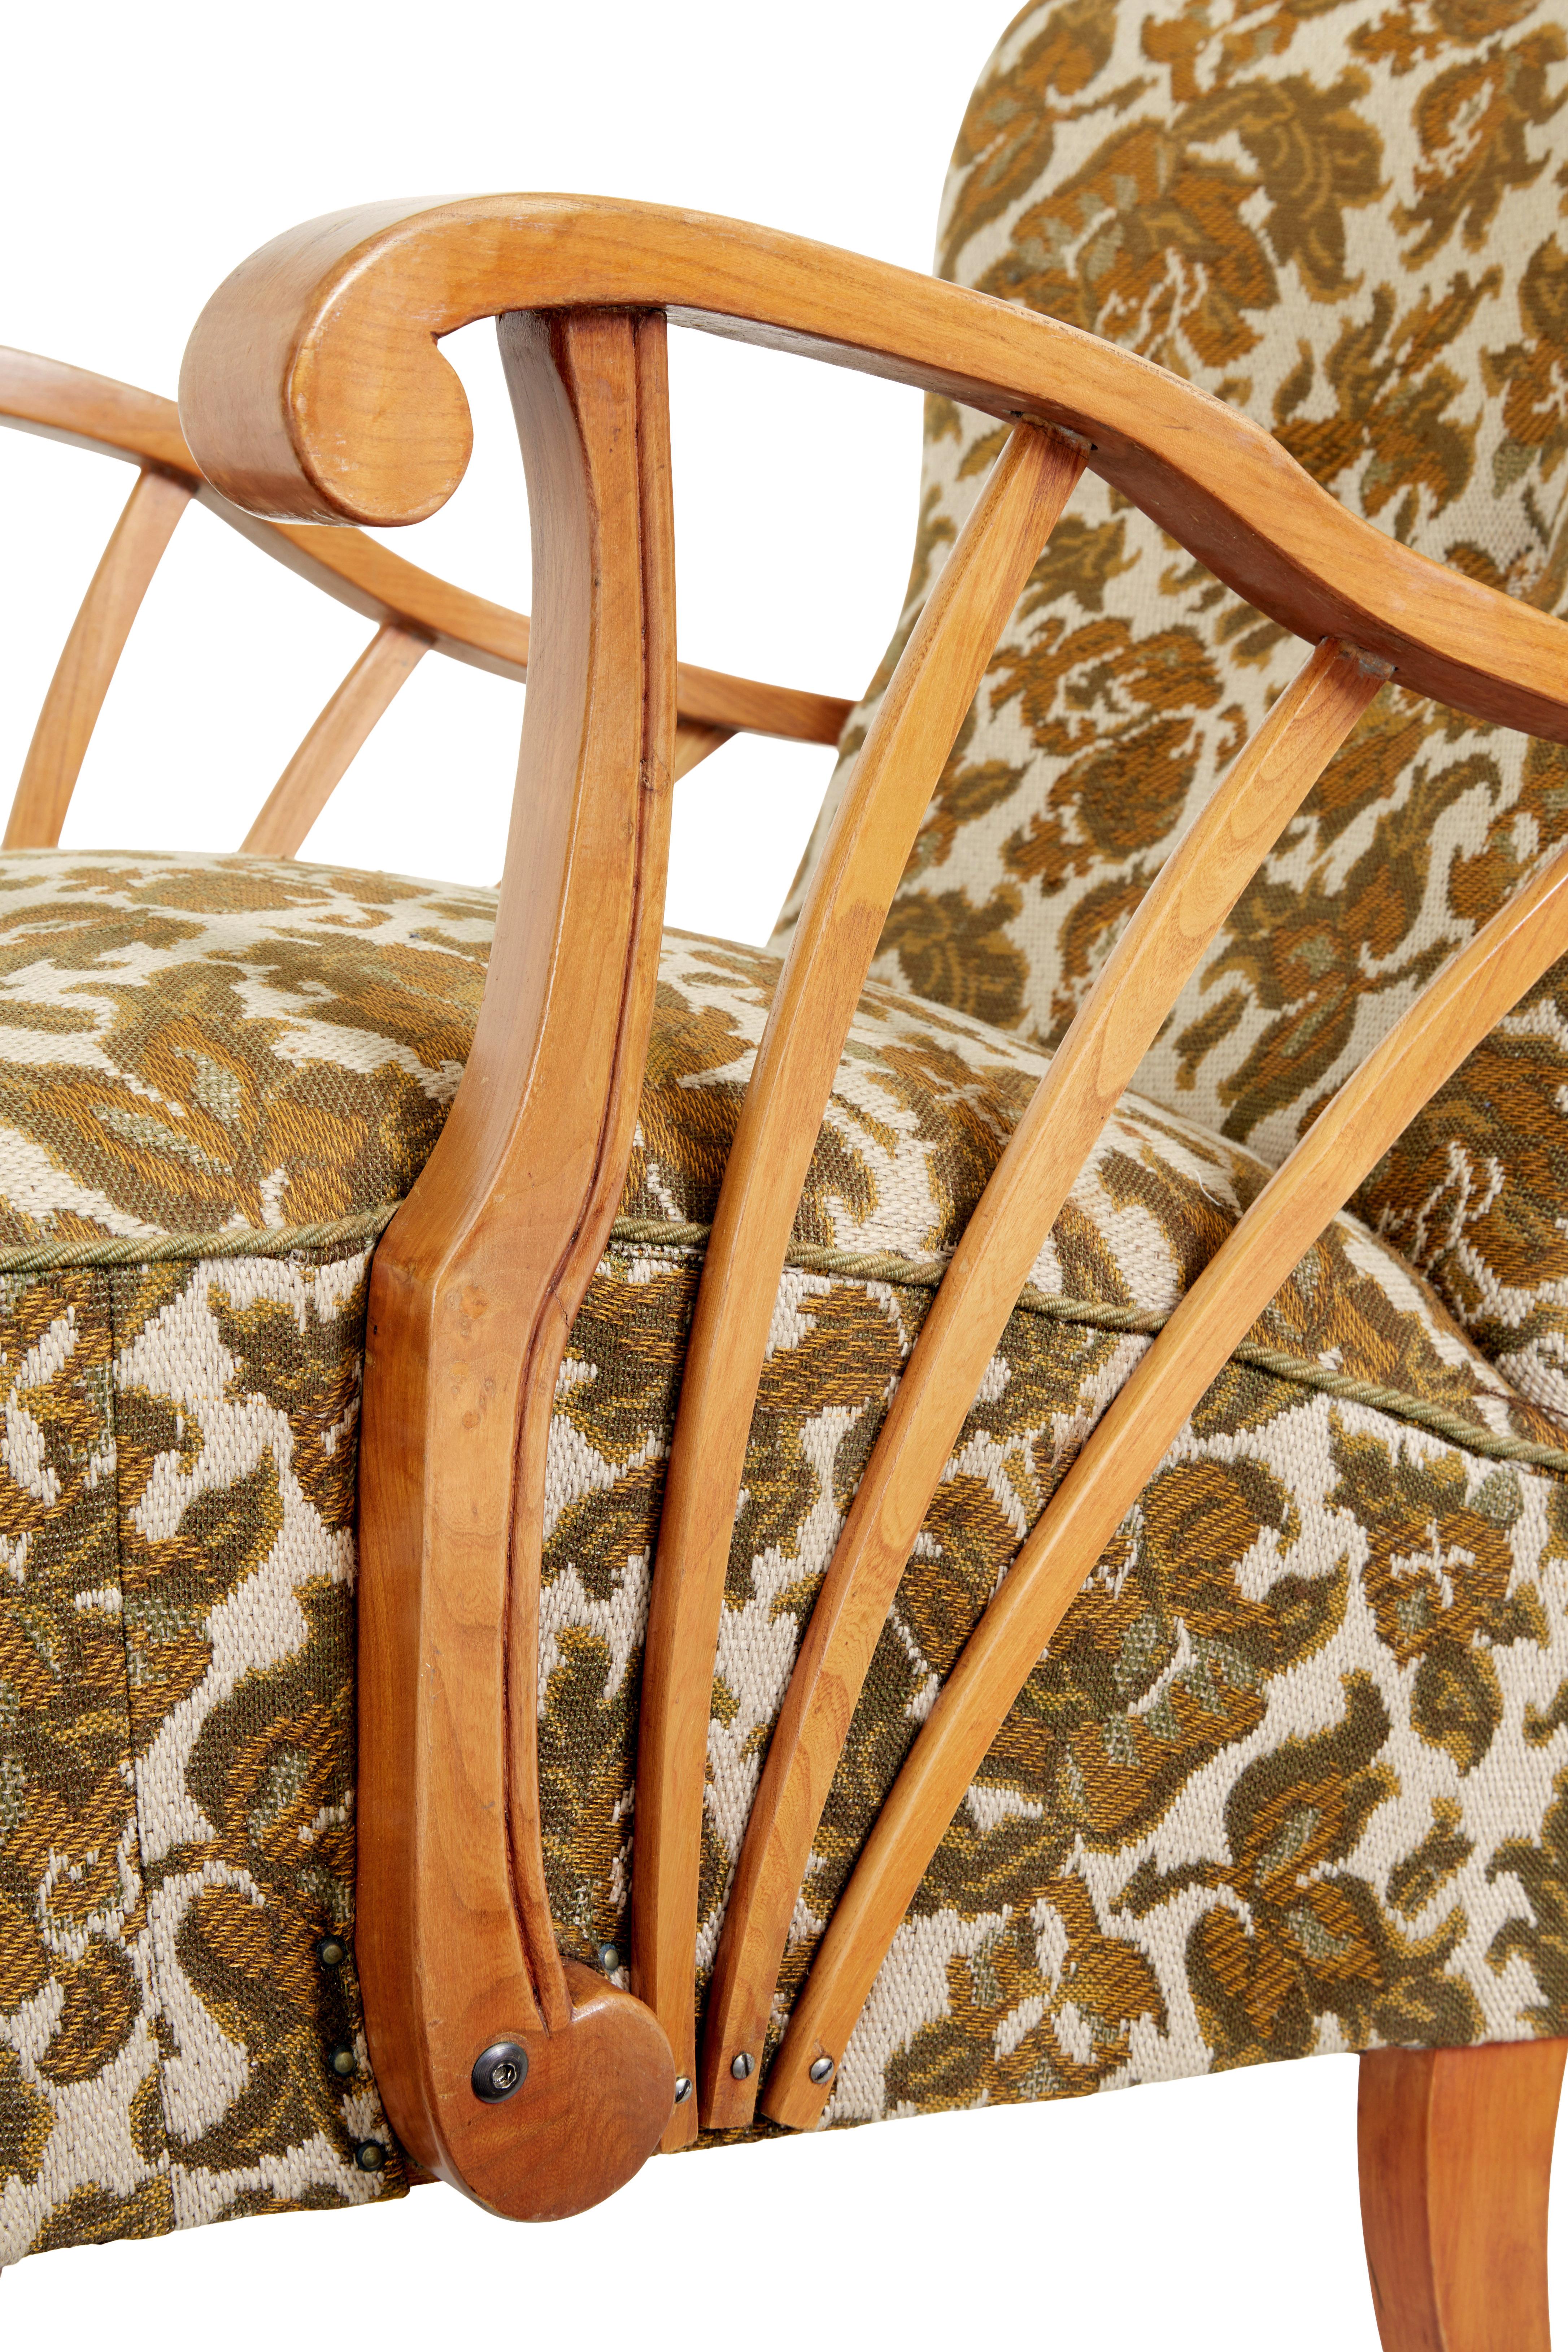 Paar skandinavische Sessel aus Ulmenholz aus der Mitte des Jahrhunderts CIRCA 1950.

Zwei schwedische Loungesessel von guter Qualität.  Ziemlich niedrige Sitzposition, aber sehr bequem.

Geformte Rückenlehnen mit offenen Seitenarmen, gefächerte